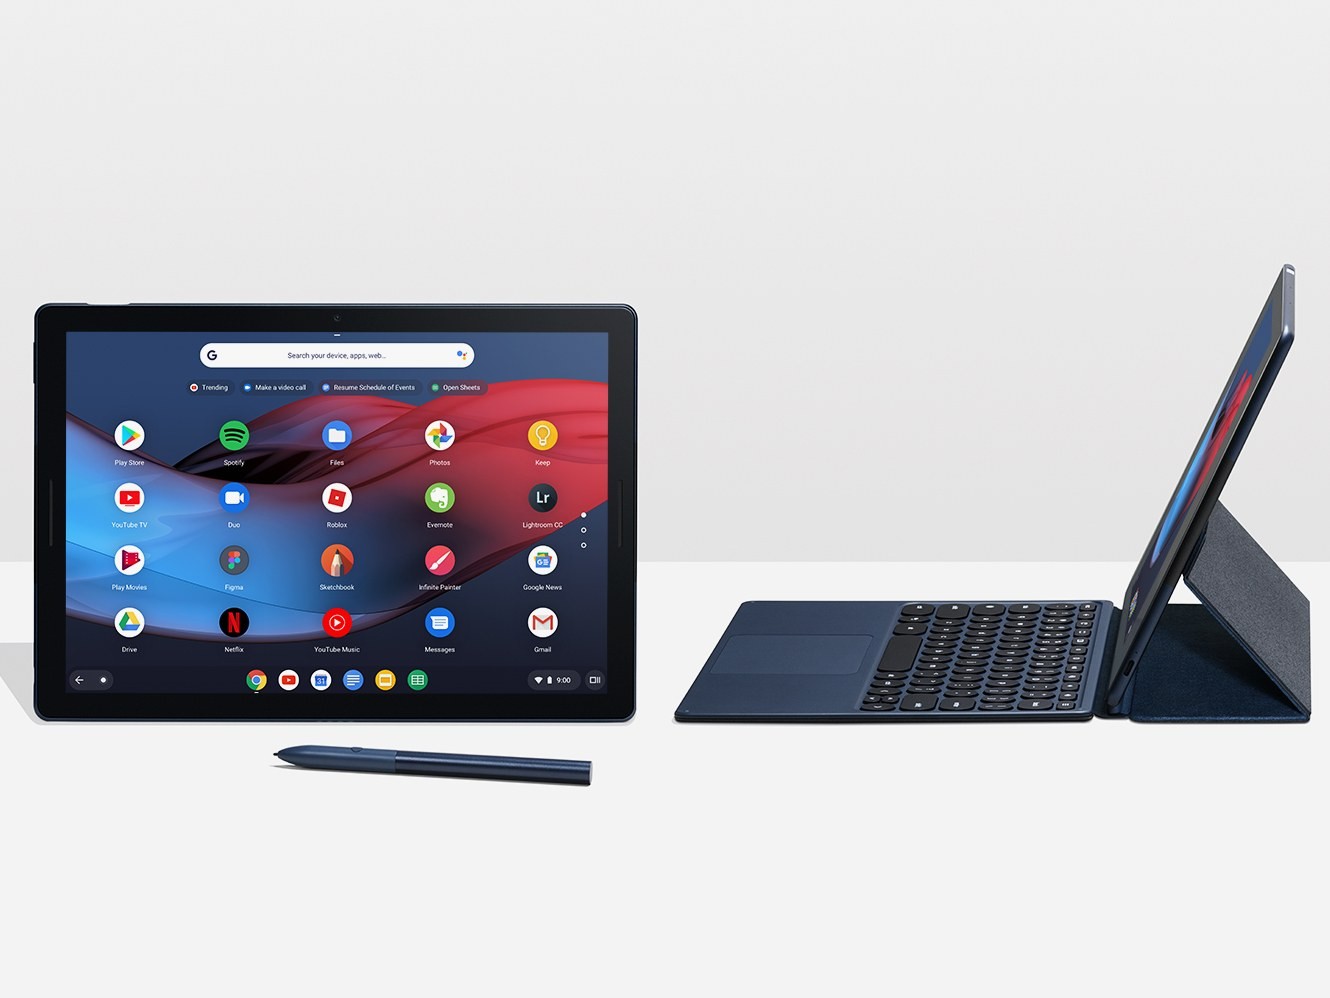 Les Meilleures Offres Des Chromebook Pour L Annee 2019 - avoir des robux gratuit sans complu00e9ter doffres sur pc